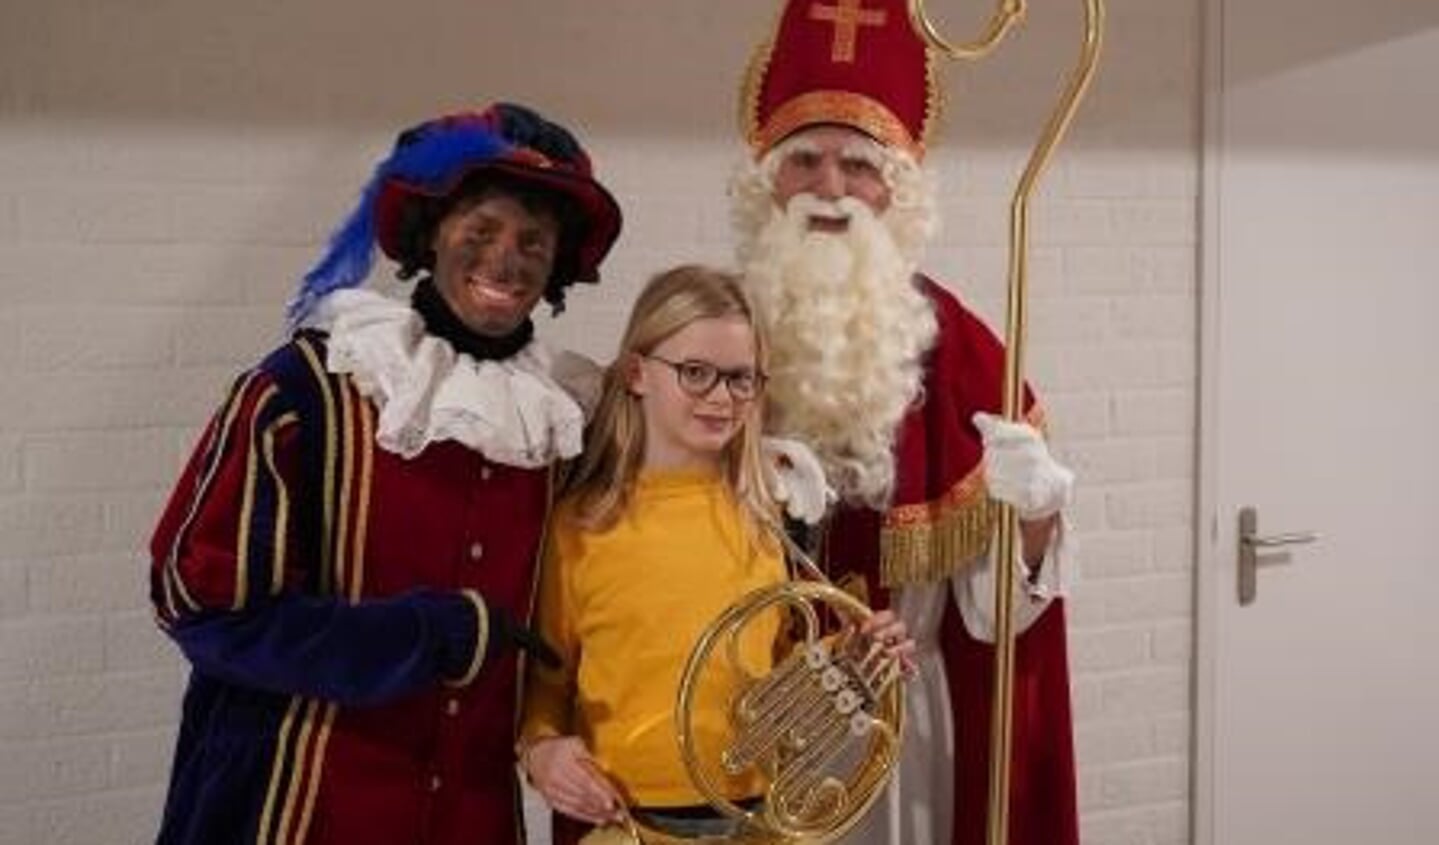 Sint en Piet hadden het geluk om met Dorienke en haar nieuwe hoorn op de foto te mogen